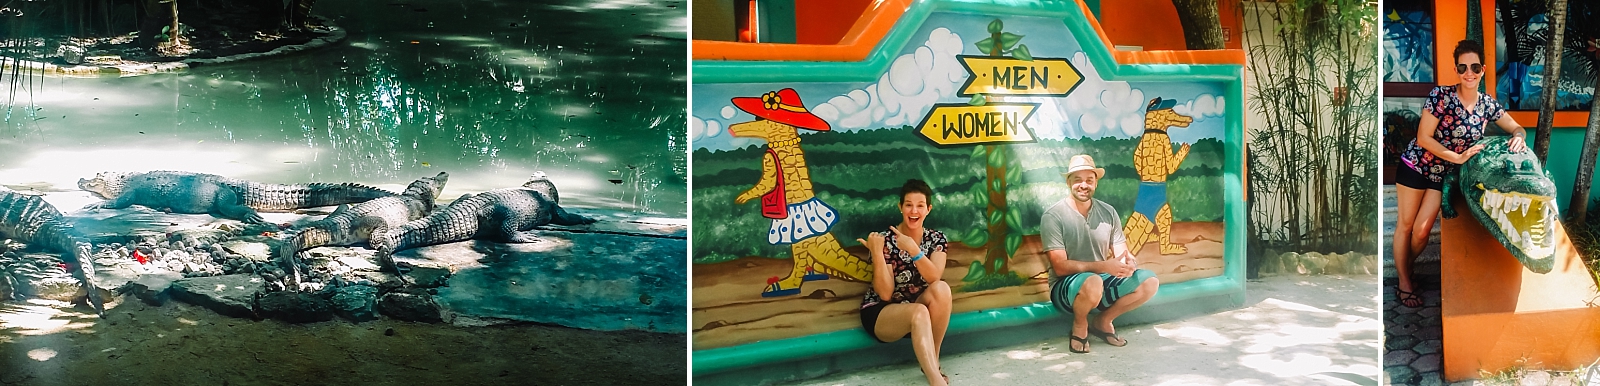 puerto morelos croco cun zoo mexico travel crocodiles